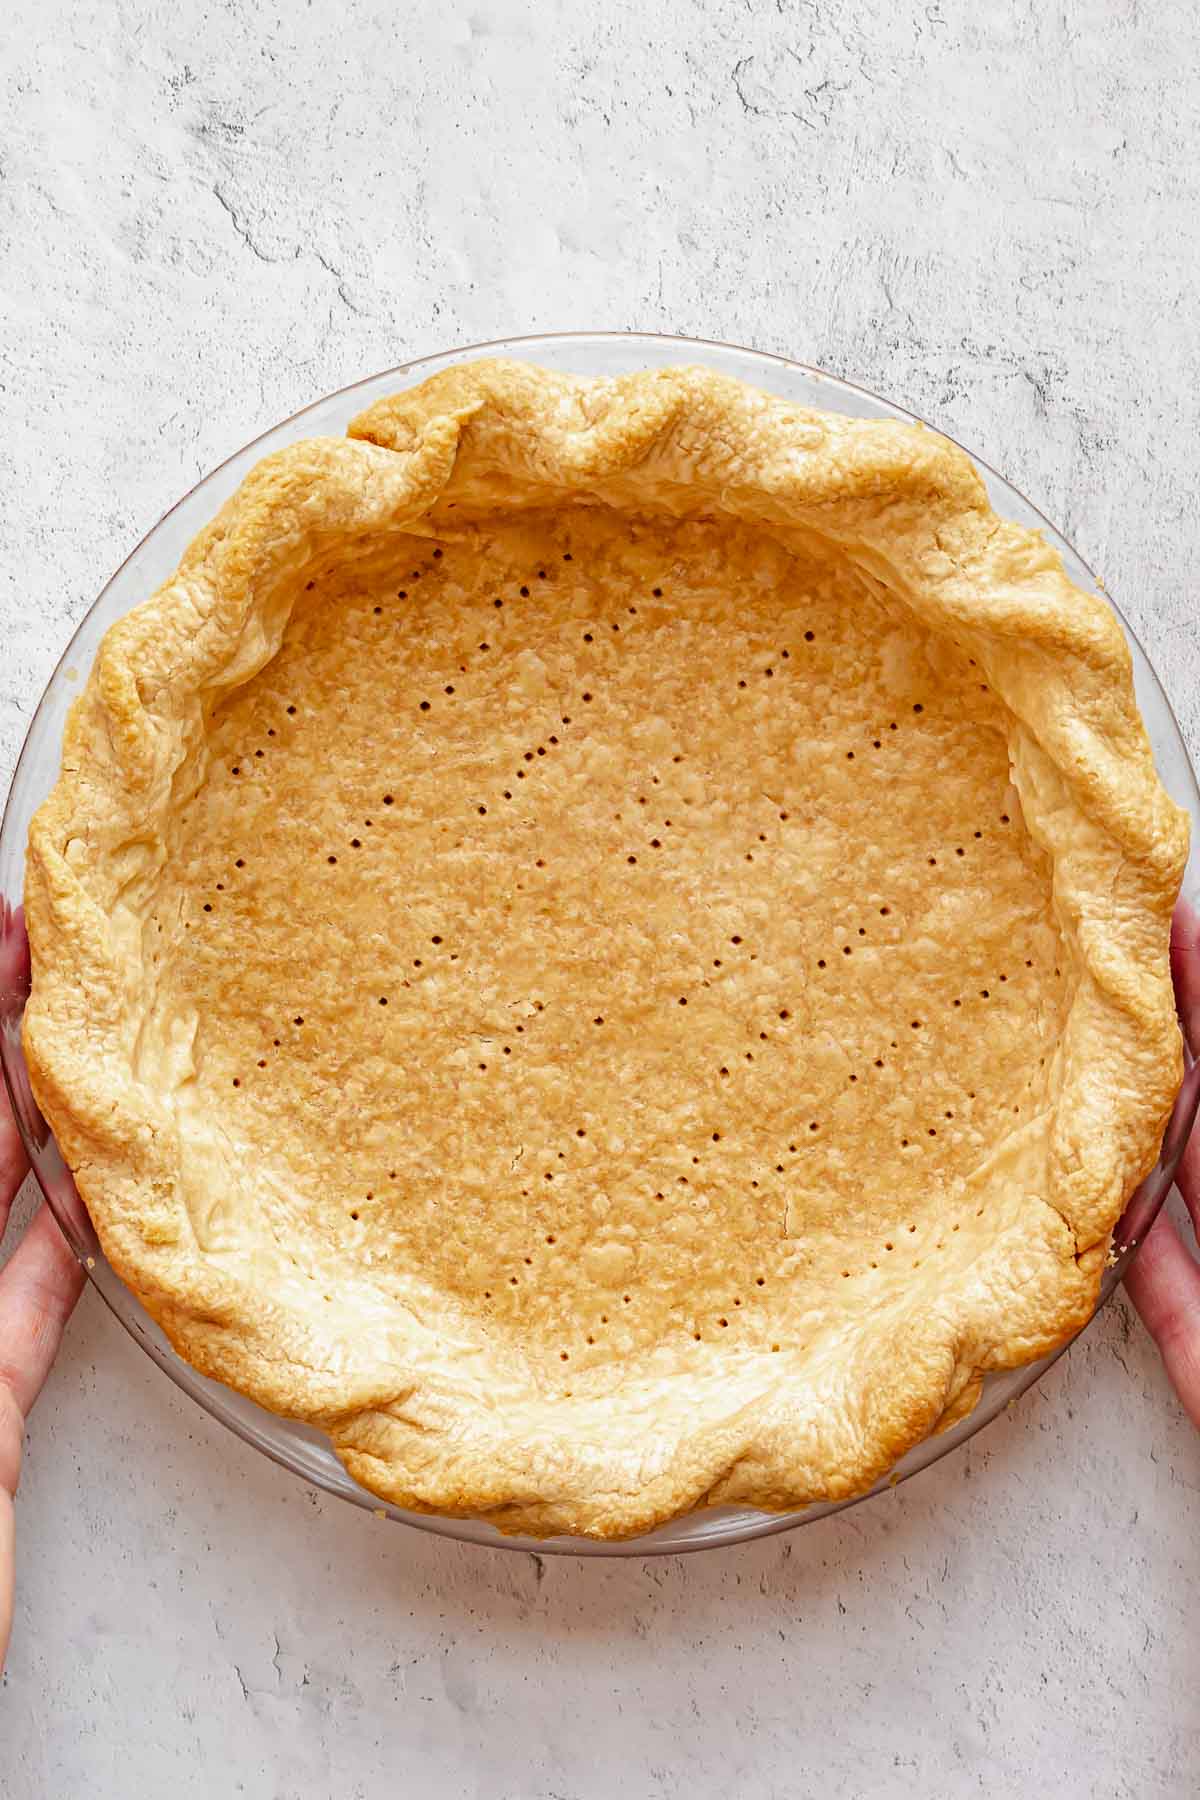 Blind baked pie crust.